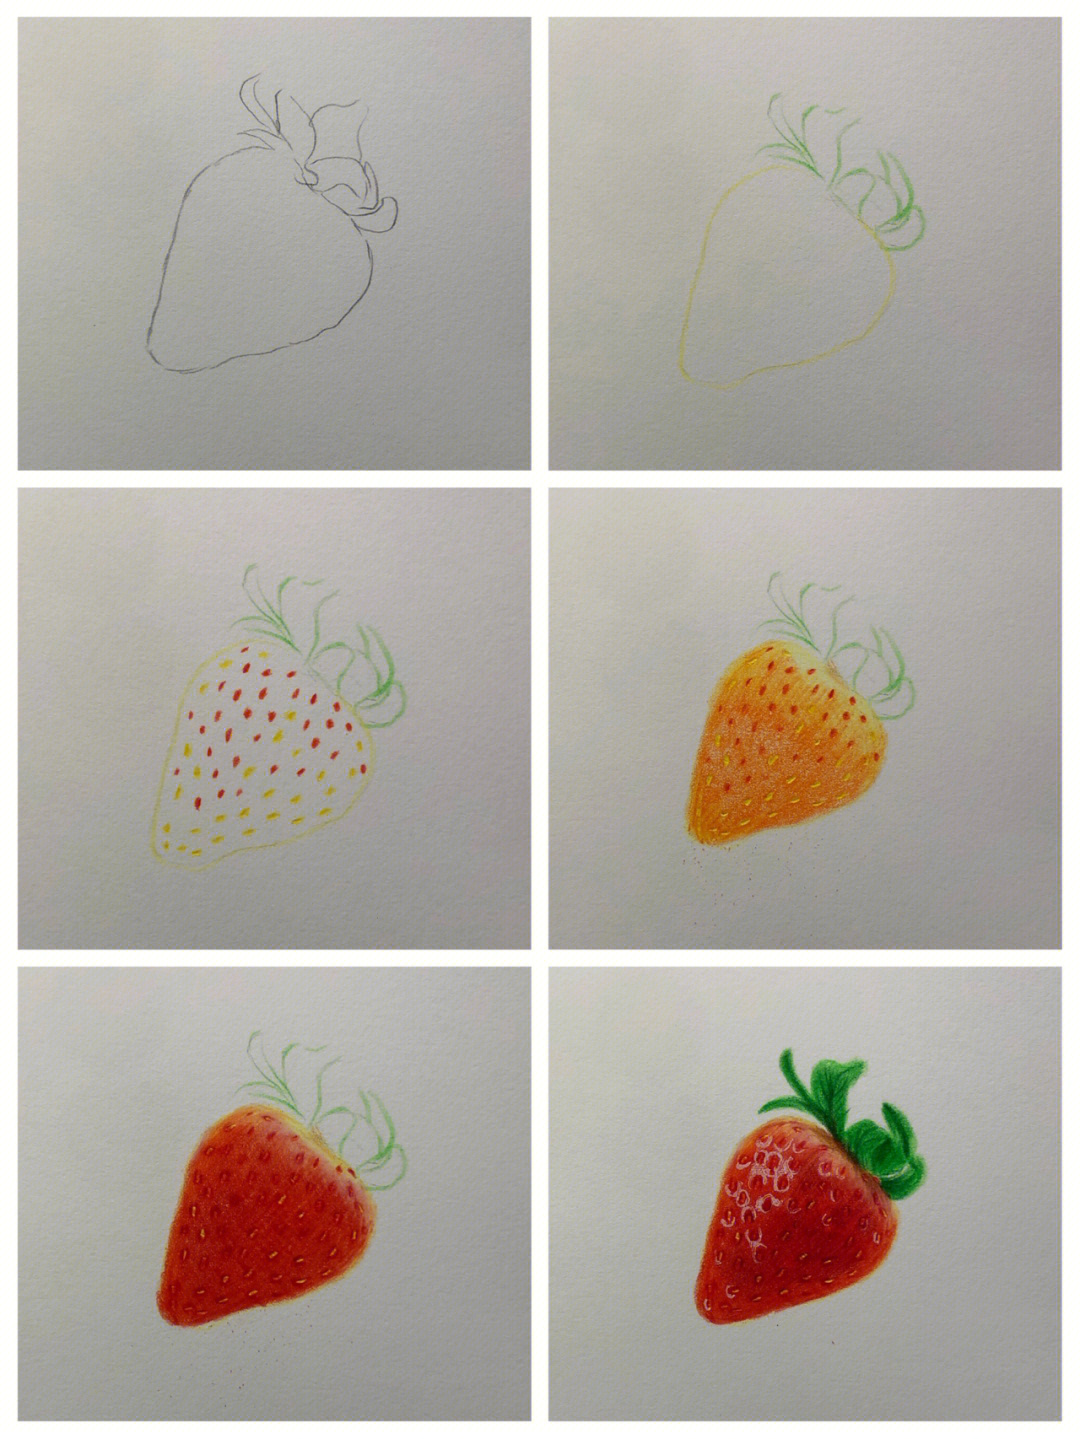 彩铅画草莓步骤图片